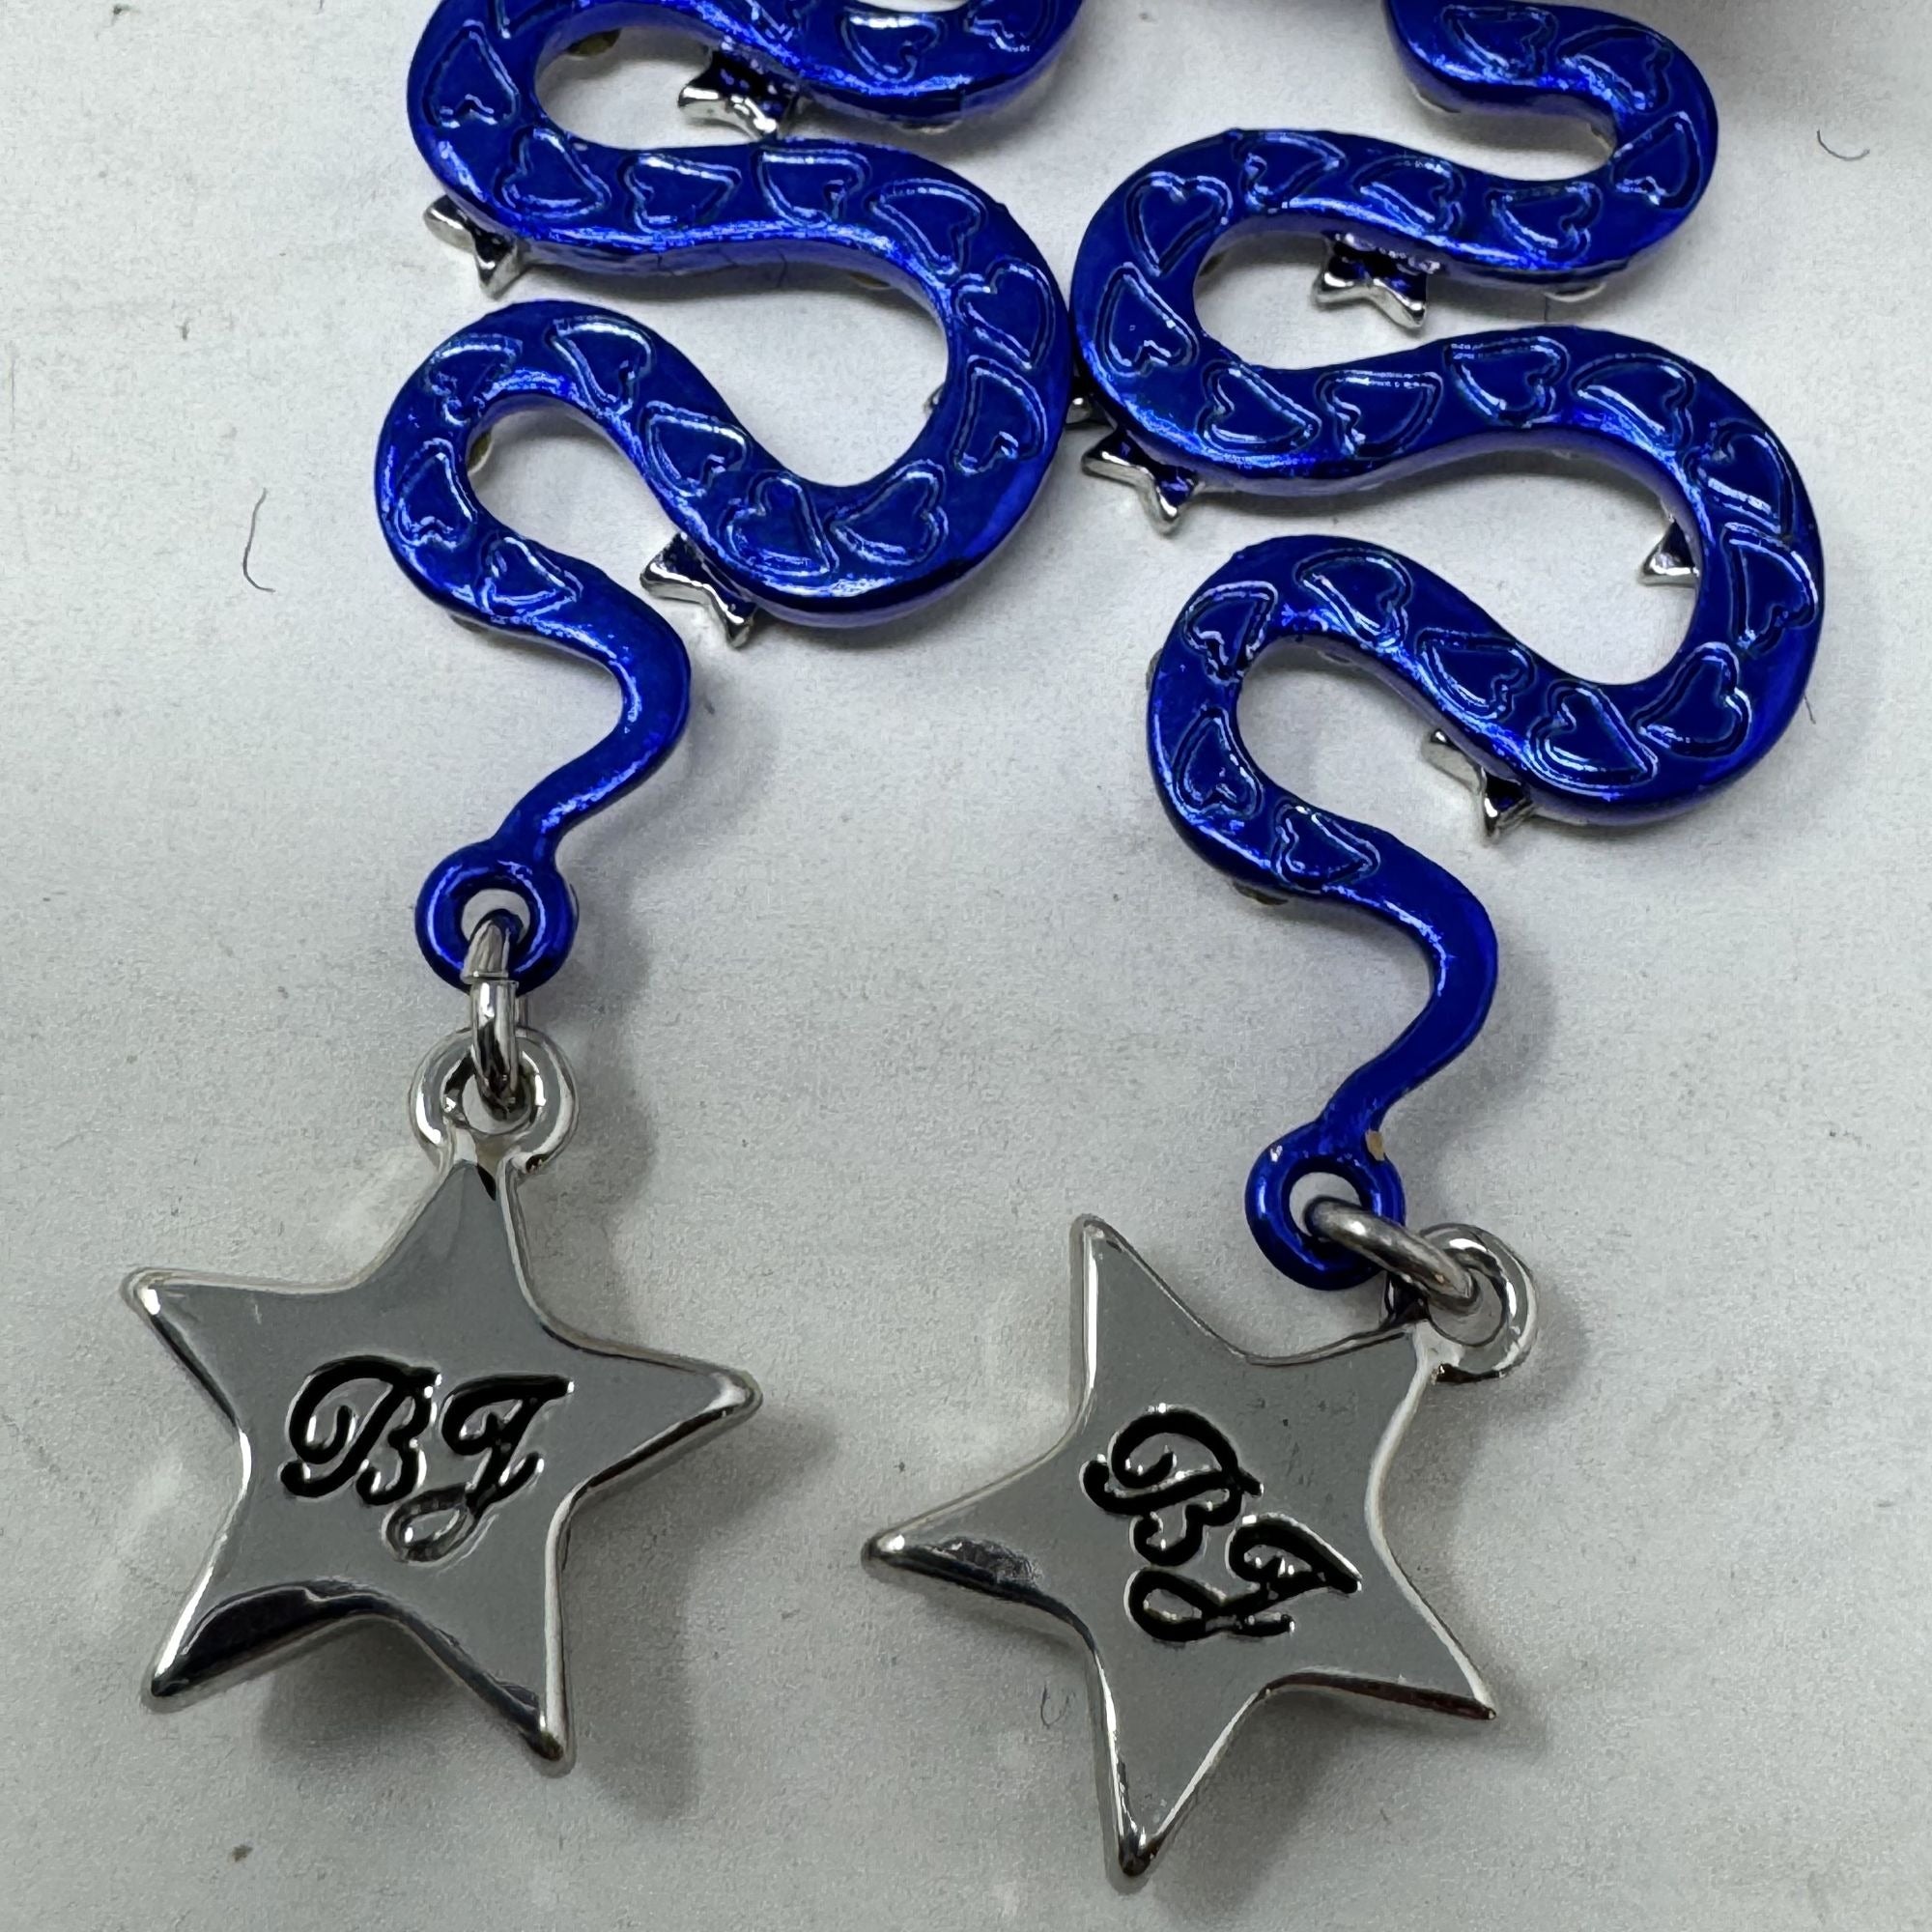 Betsey Johnson Cobalt Blue Rhinestone Shake & Star Earrings Leaver backs Silver